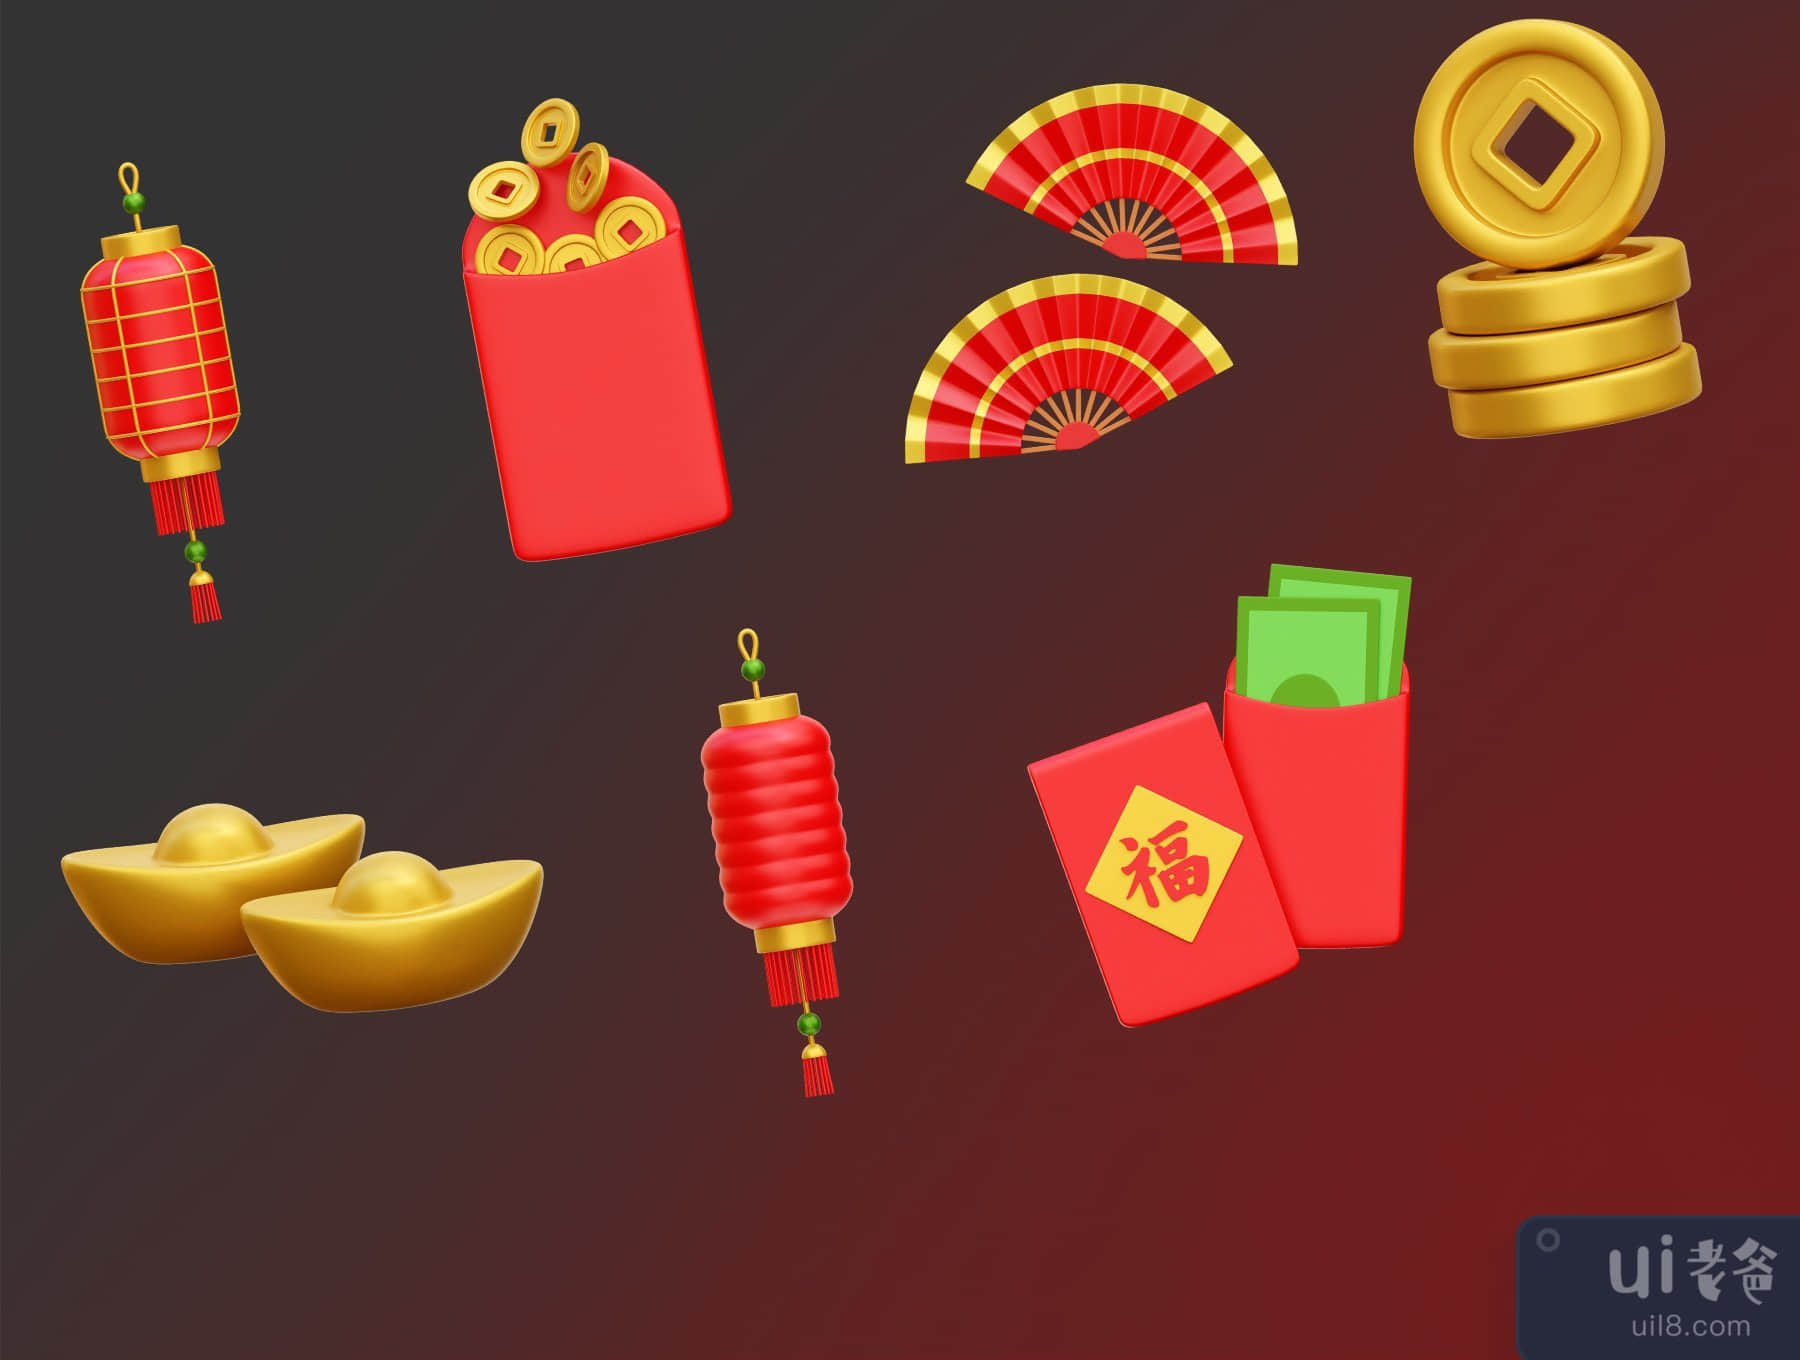 中国新年的3D图标插图 (Chinese New Year 3D Icon Illustrations)插图5